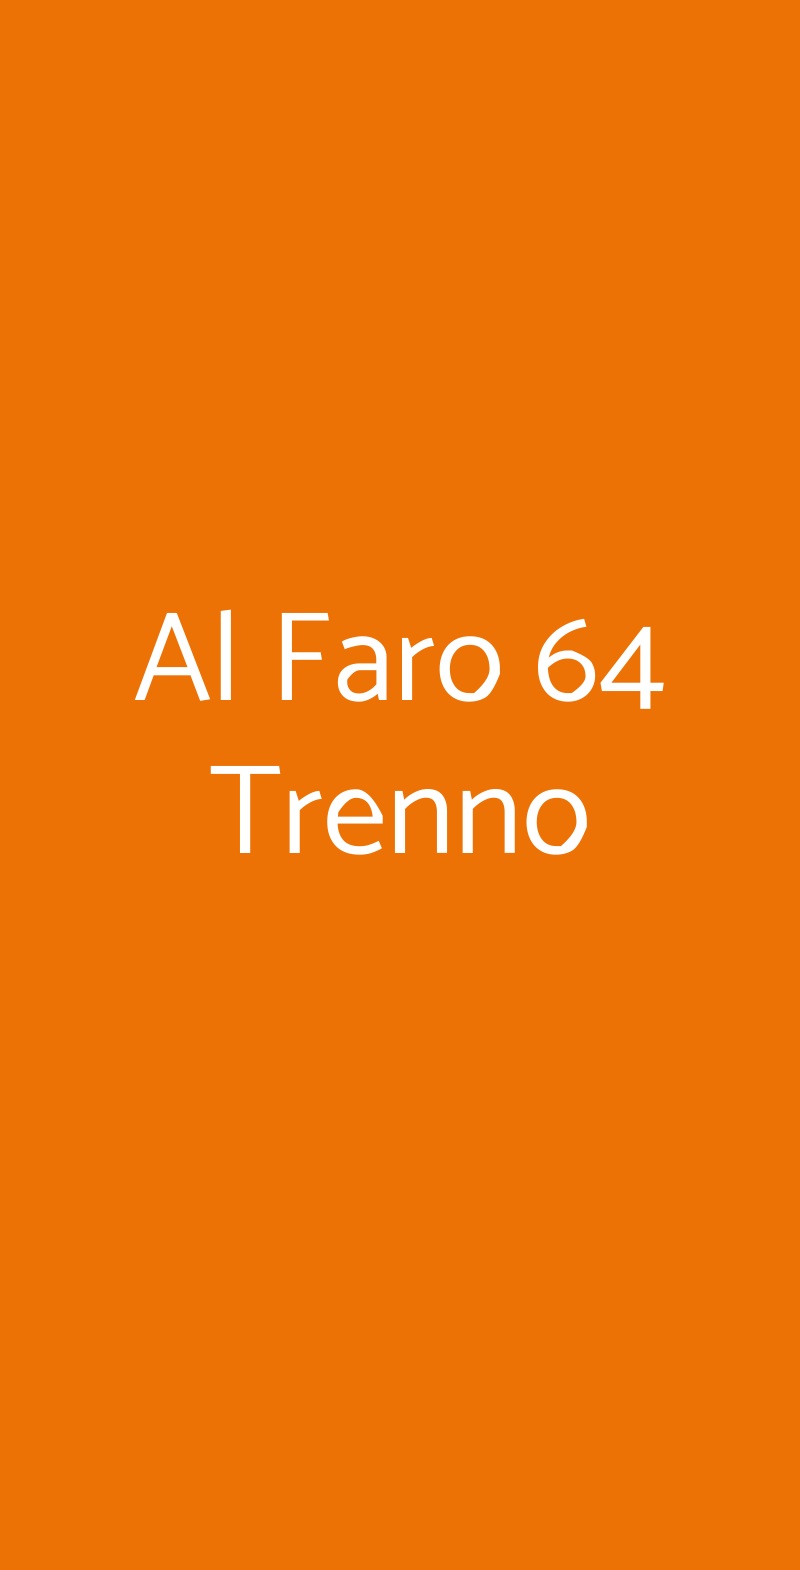 Al Faro 64 Trenno Milano menù 1 pagina